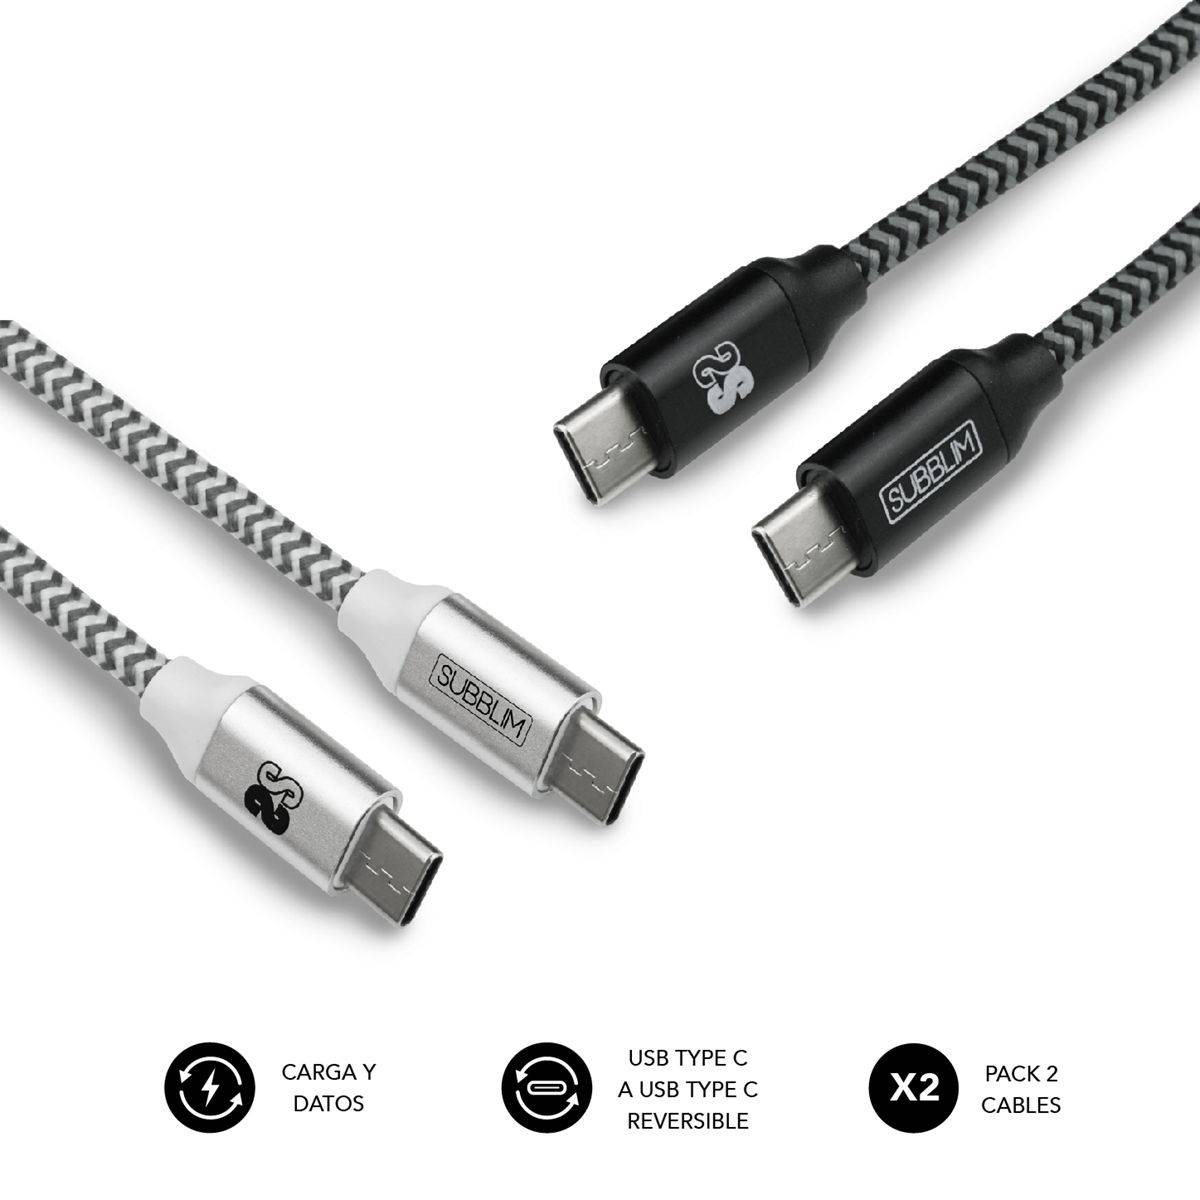 Químico Enviar Todos los años ✓ Pack 2 Cables USB Tipo C – USB Tipo C (3.0A) Black/Silver | Subblim